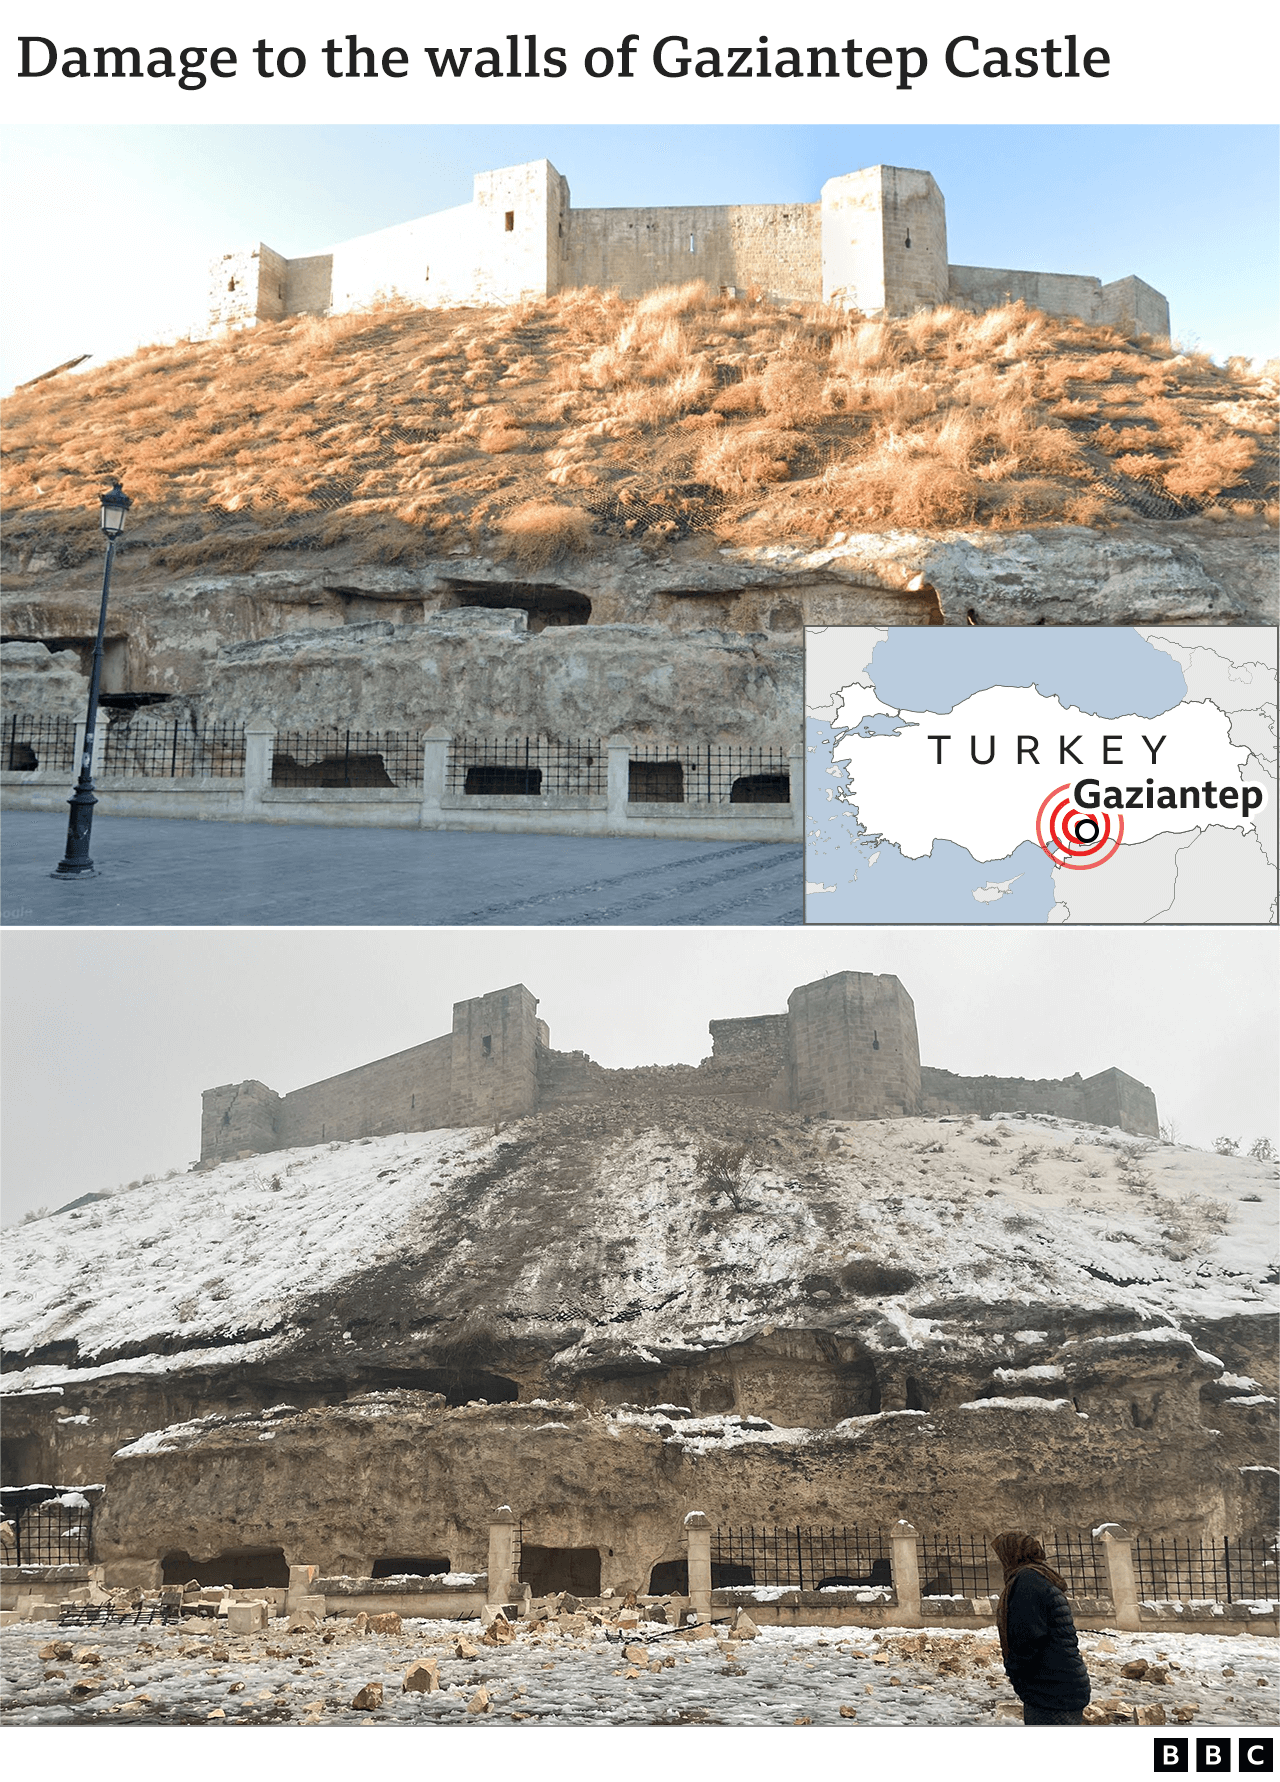 Изображения до и после повреждения замка в Газиантепе, Турция.